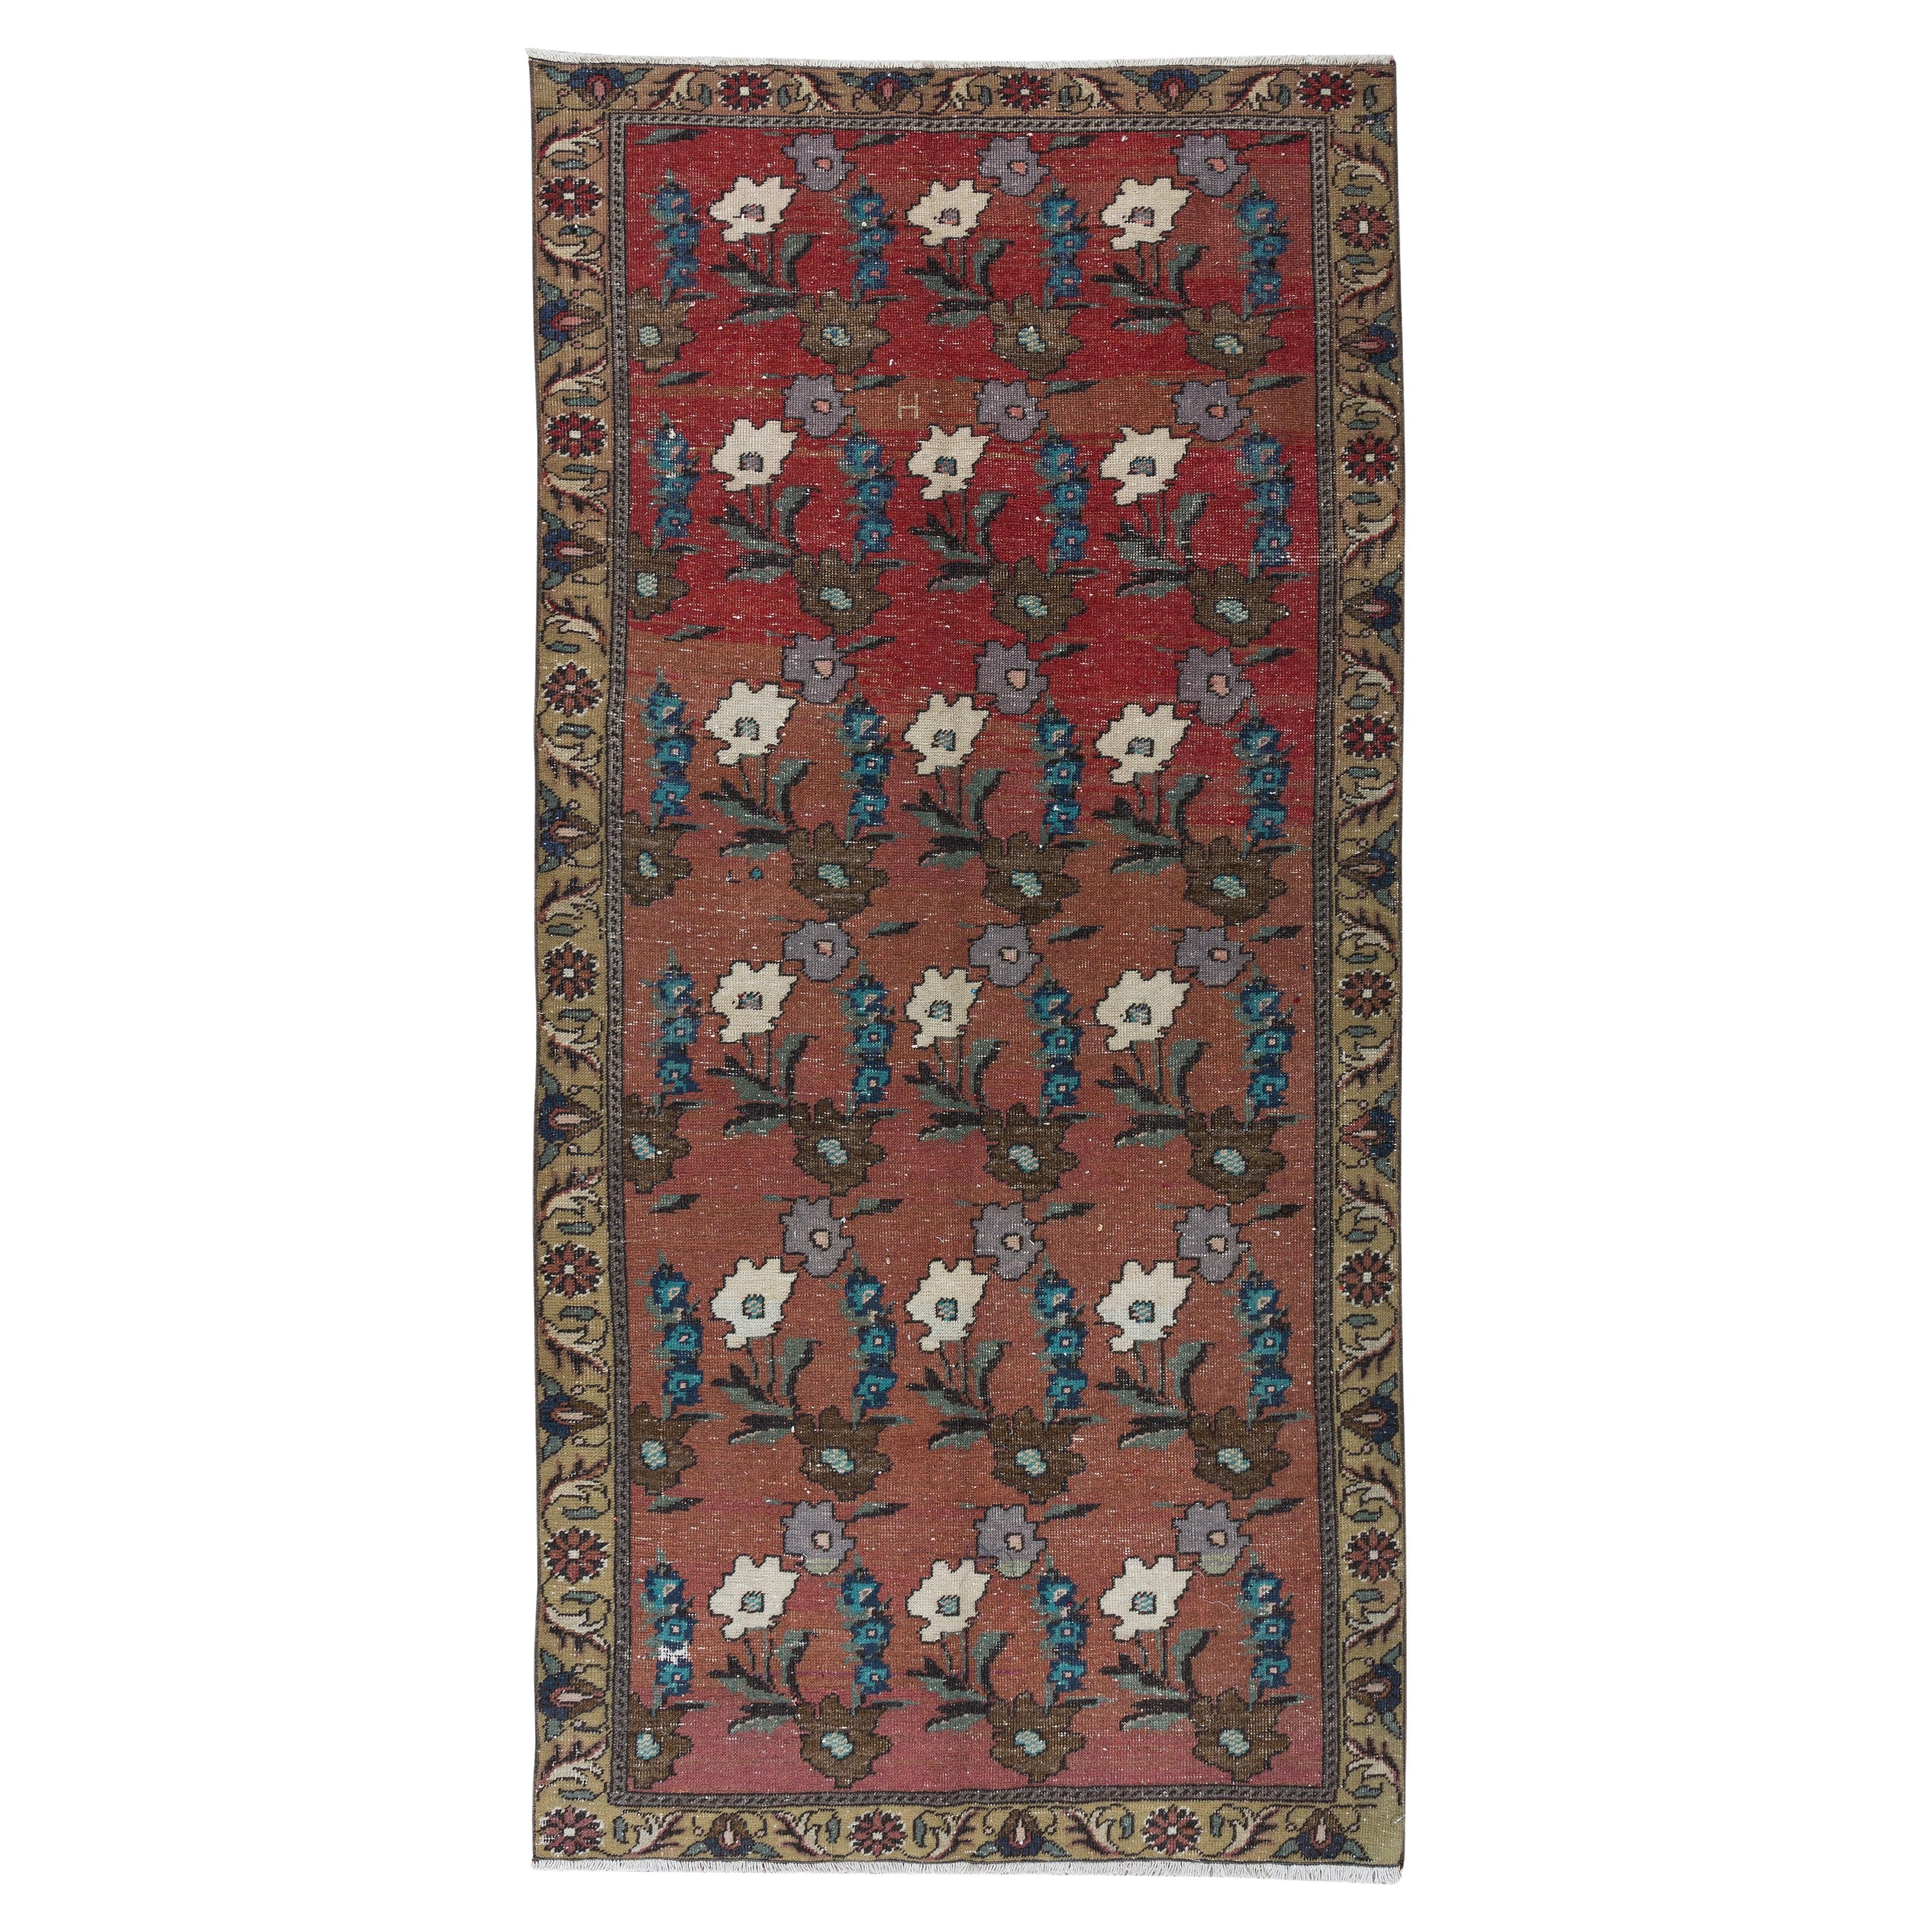 3.9x8.4 Ft Vintage Handmade Floral Pattern Turkish Rug in Red, Blue & Beige For Sale